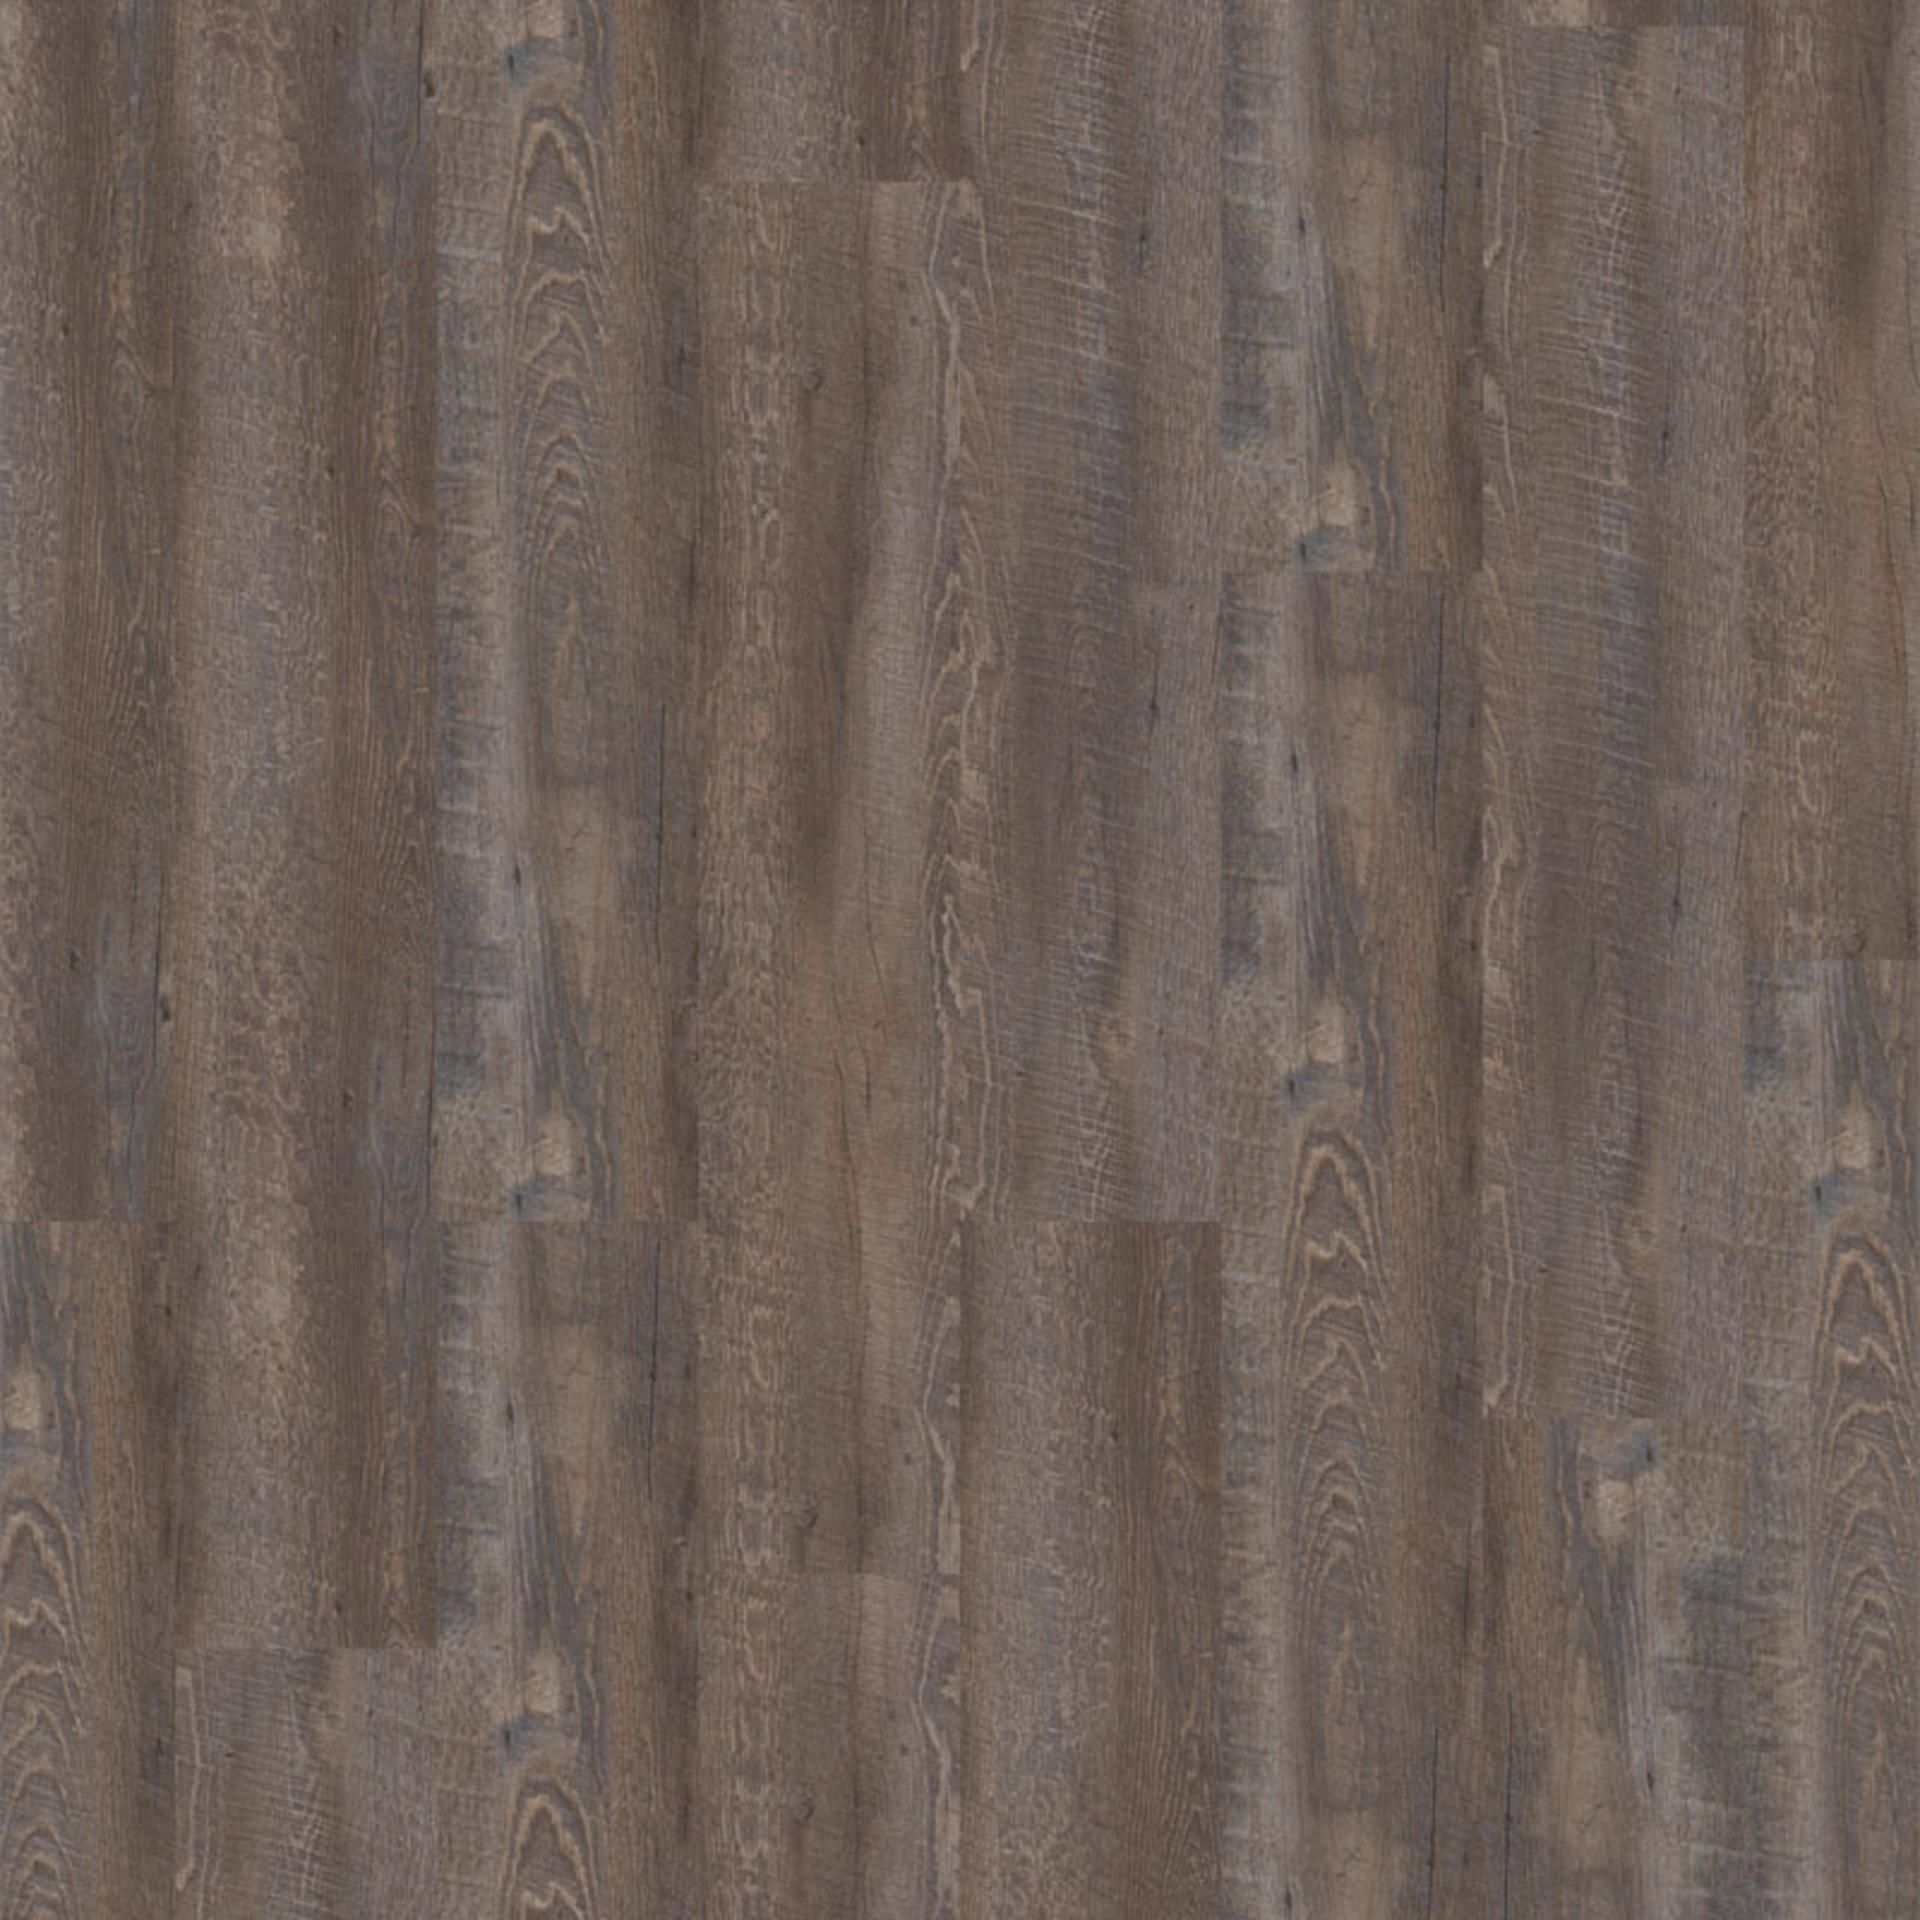 Designboden Smoked Oak DARK GREY Planke 121,9 cm x 22,9 cm - Nutzschichtdicke 0,30 mm